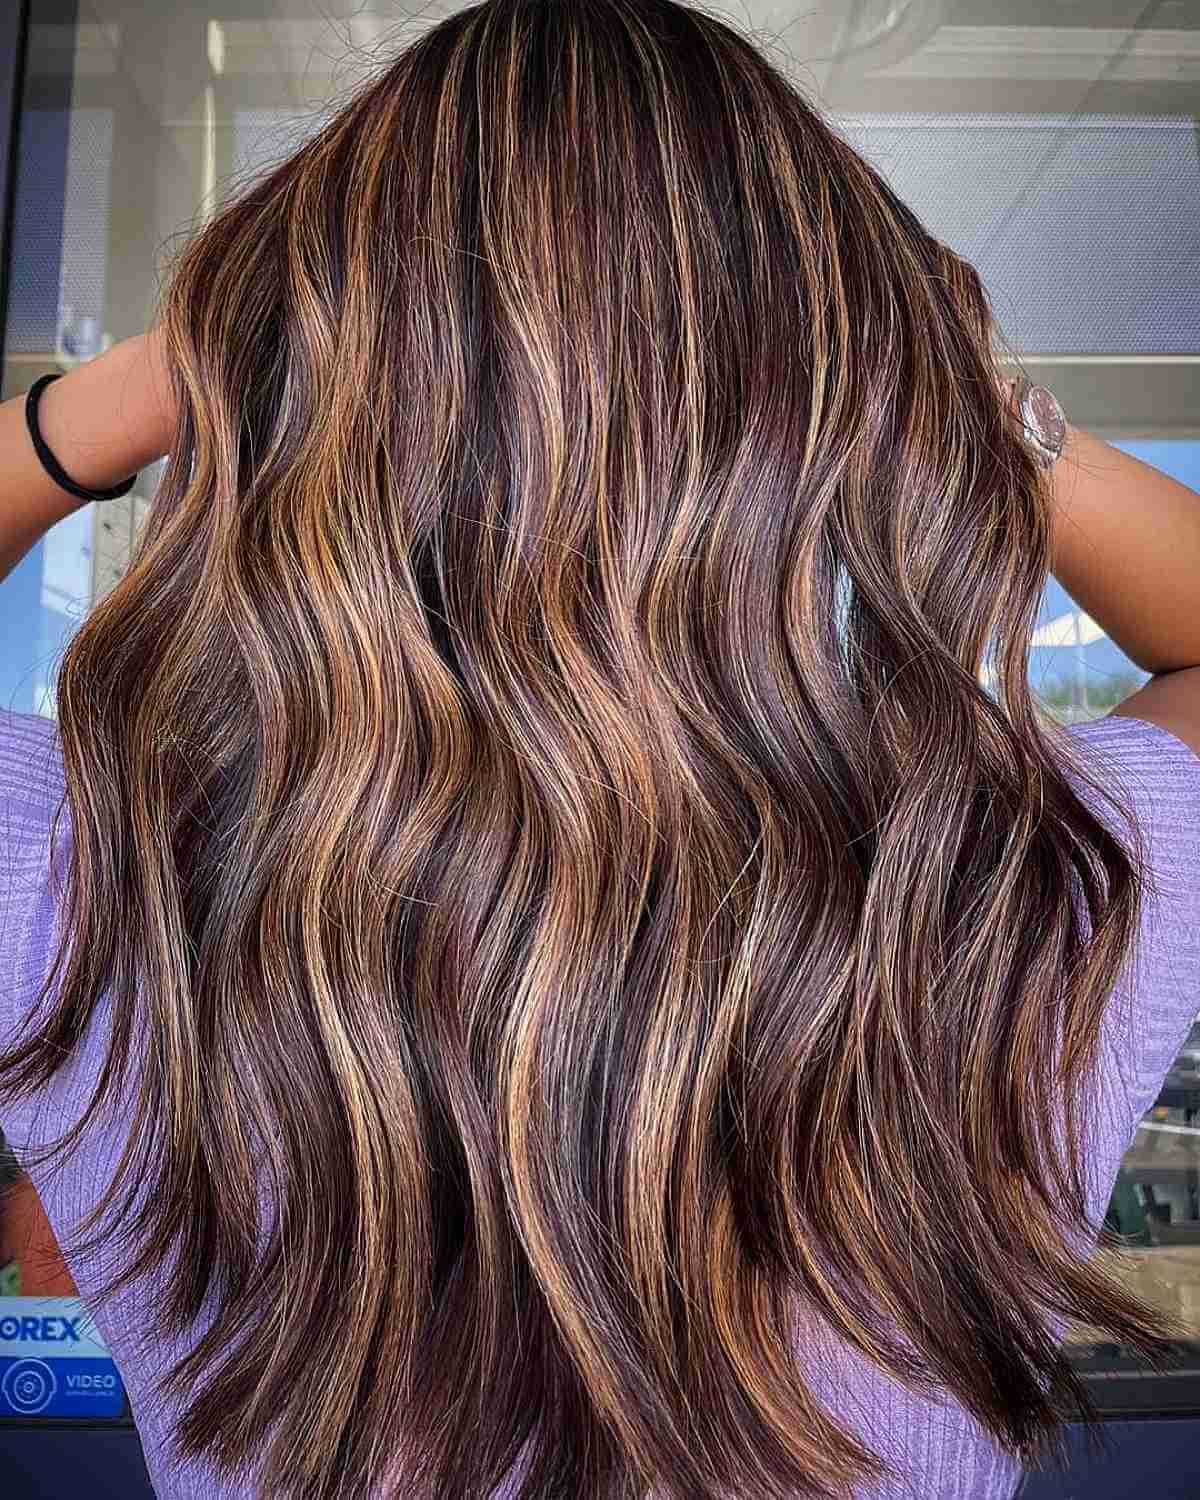 Gorgeous Hair Colour Ideas That Worth Trying – Caramel hair